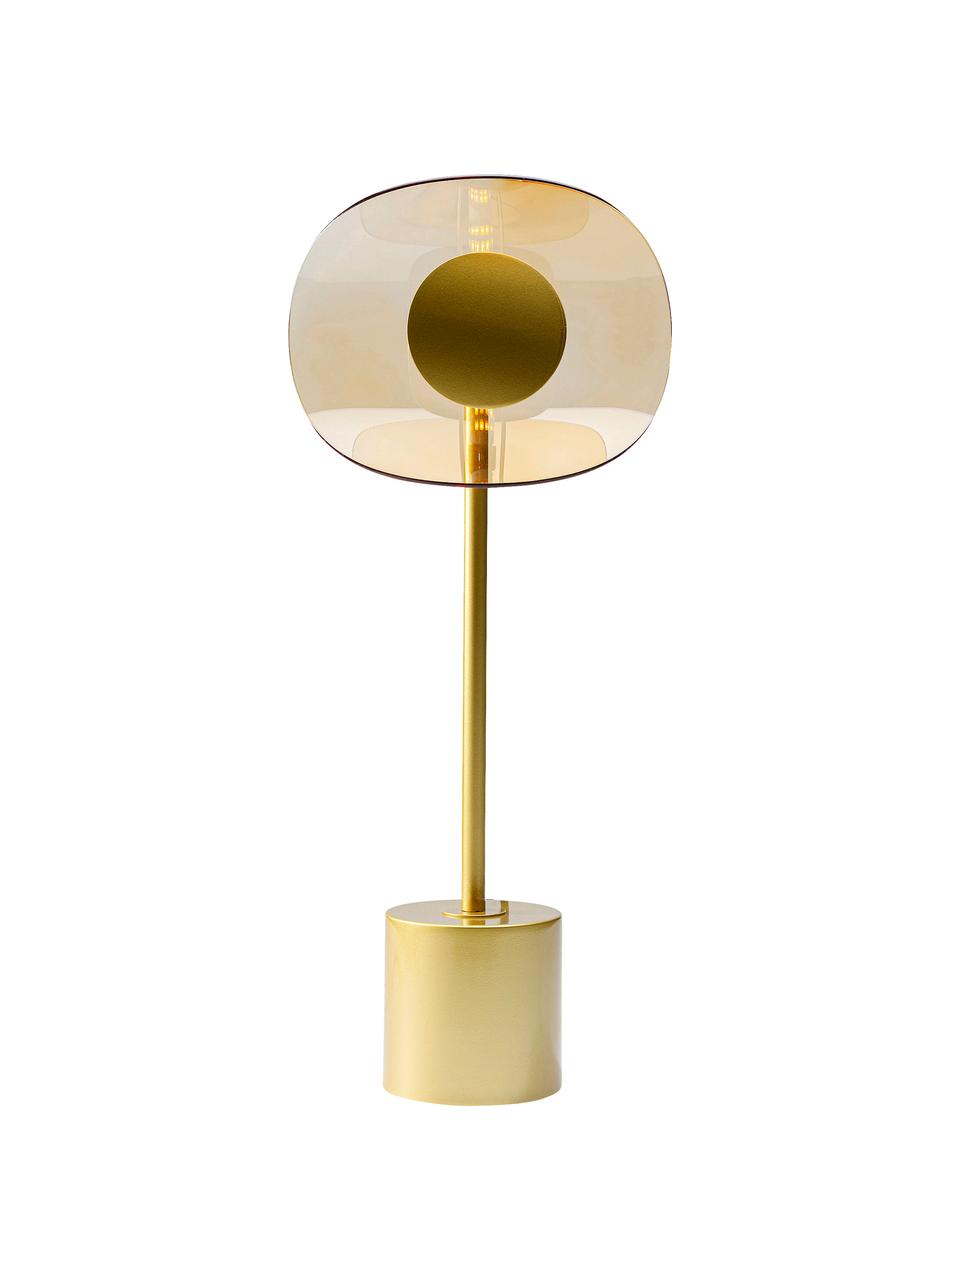 Grosse Tischlampe Mariposa aus Glas und Metall, Lampenschirm: Glas, Goldfarben, Ø 25 x H 60 cm